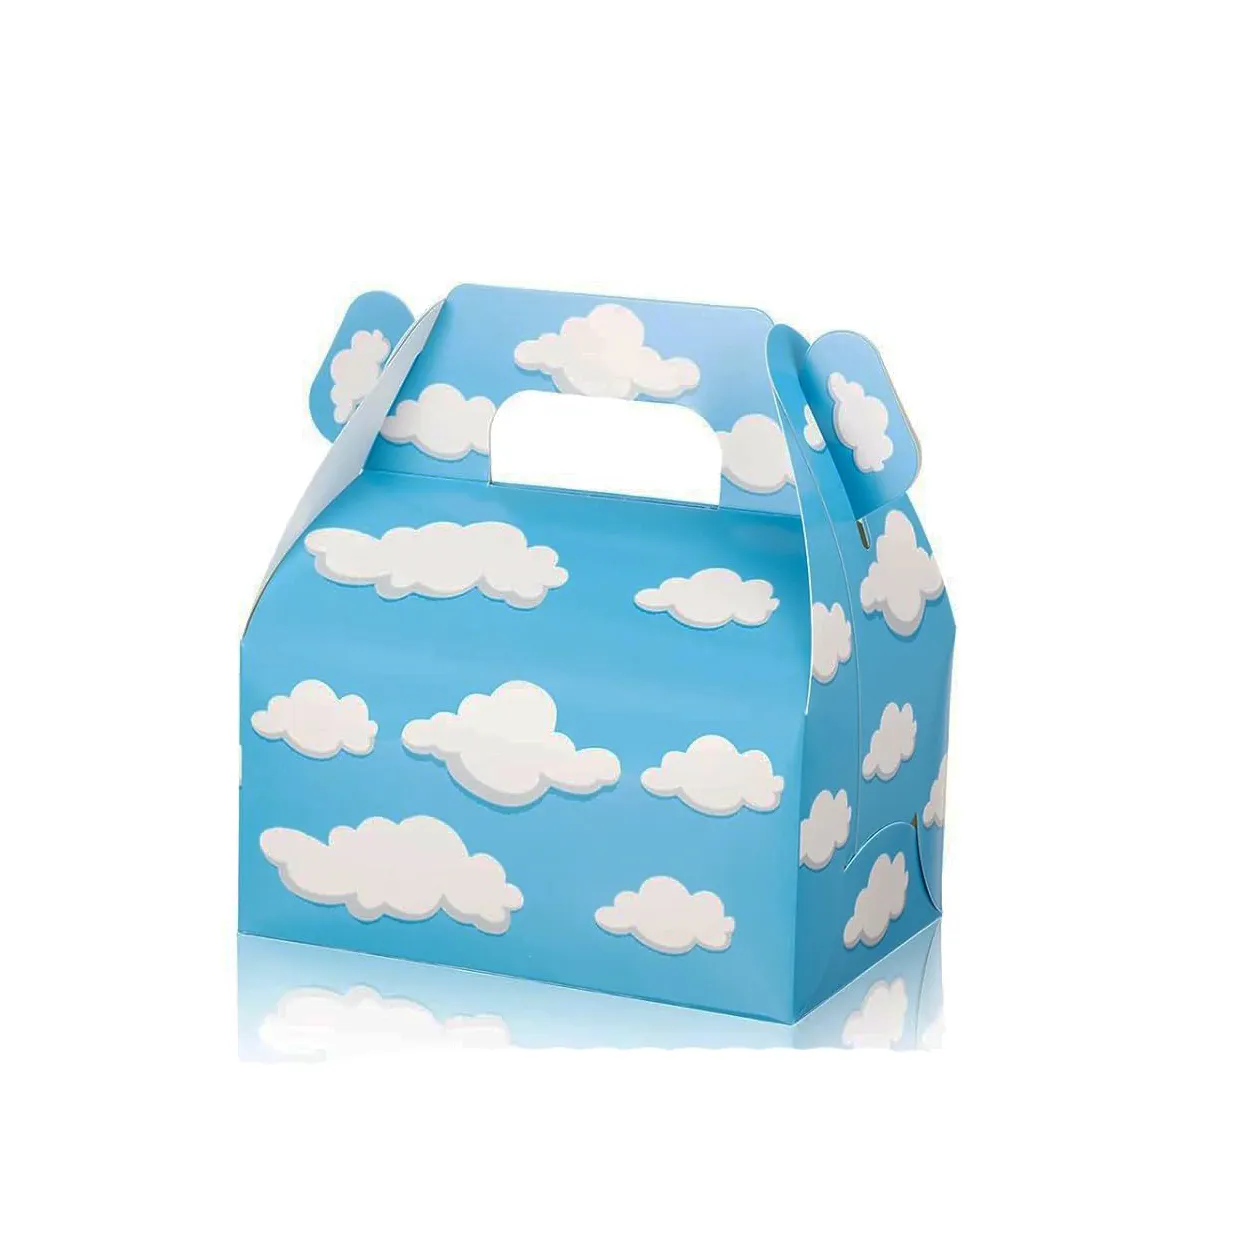 도매 어린이 생일 파티 용품 골판지 포장 사탕 블루 화이트 구름 패턴 디자인 아이들을위한 휴대용 선물 상자 세트